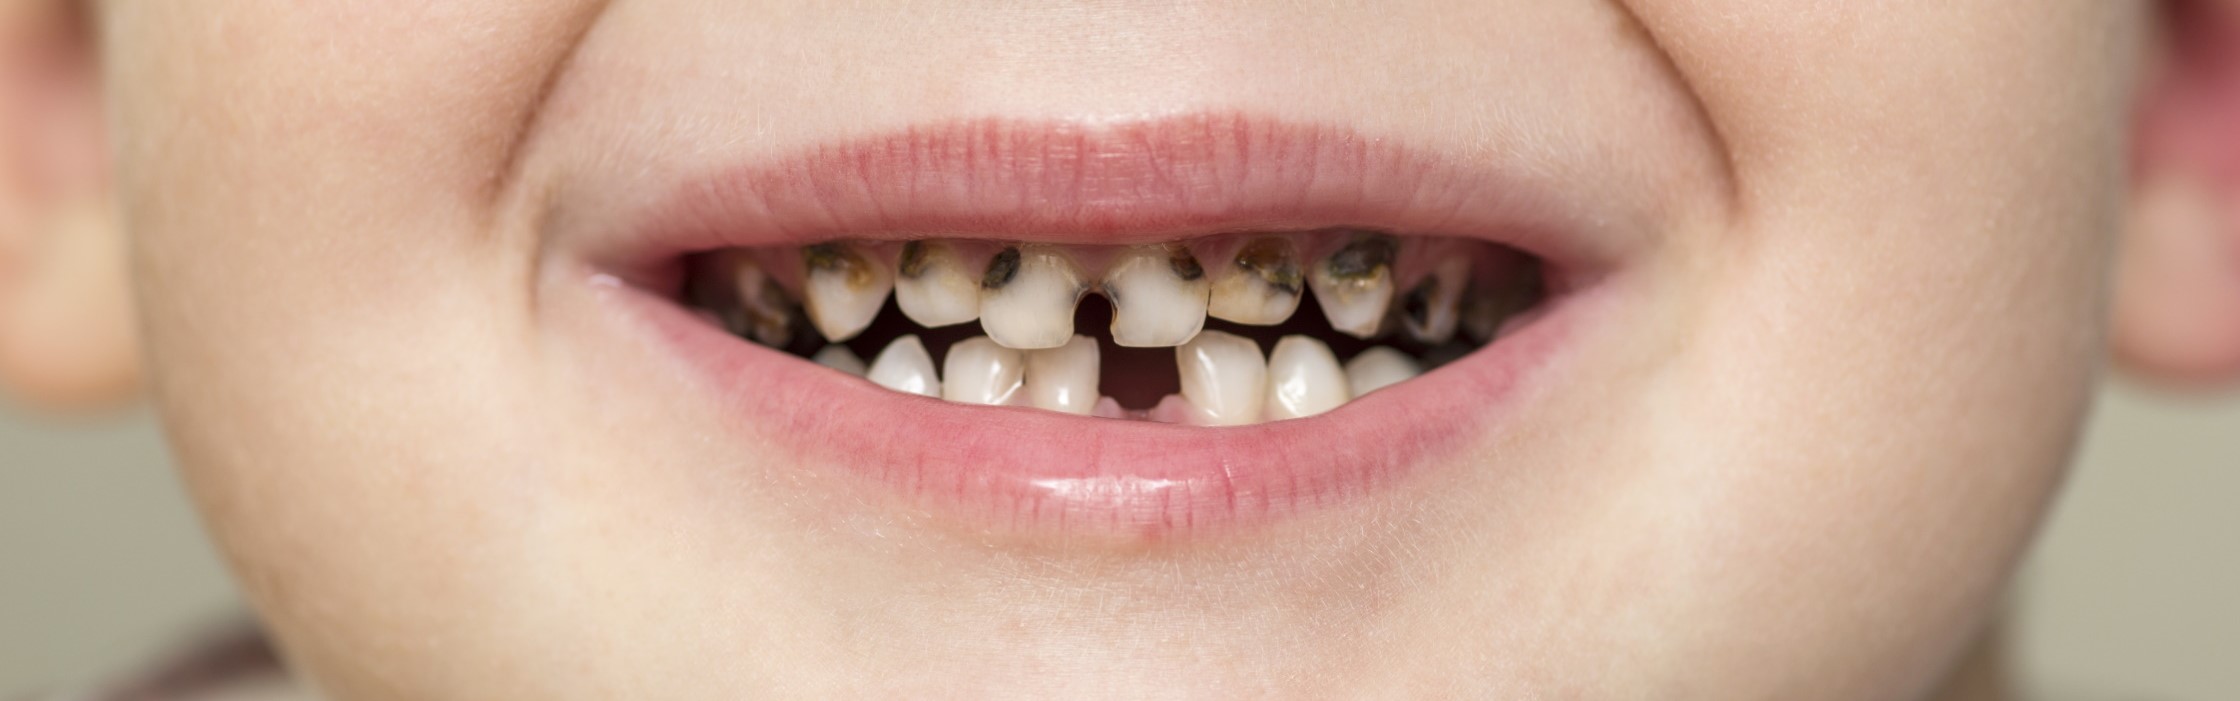 Karies: Welche Ursachen gibt es für die Zahnerkrankung?